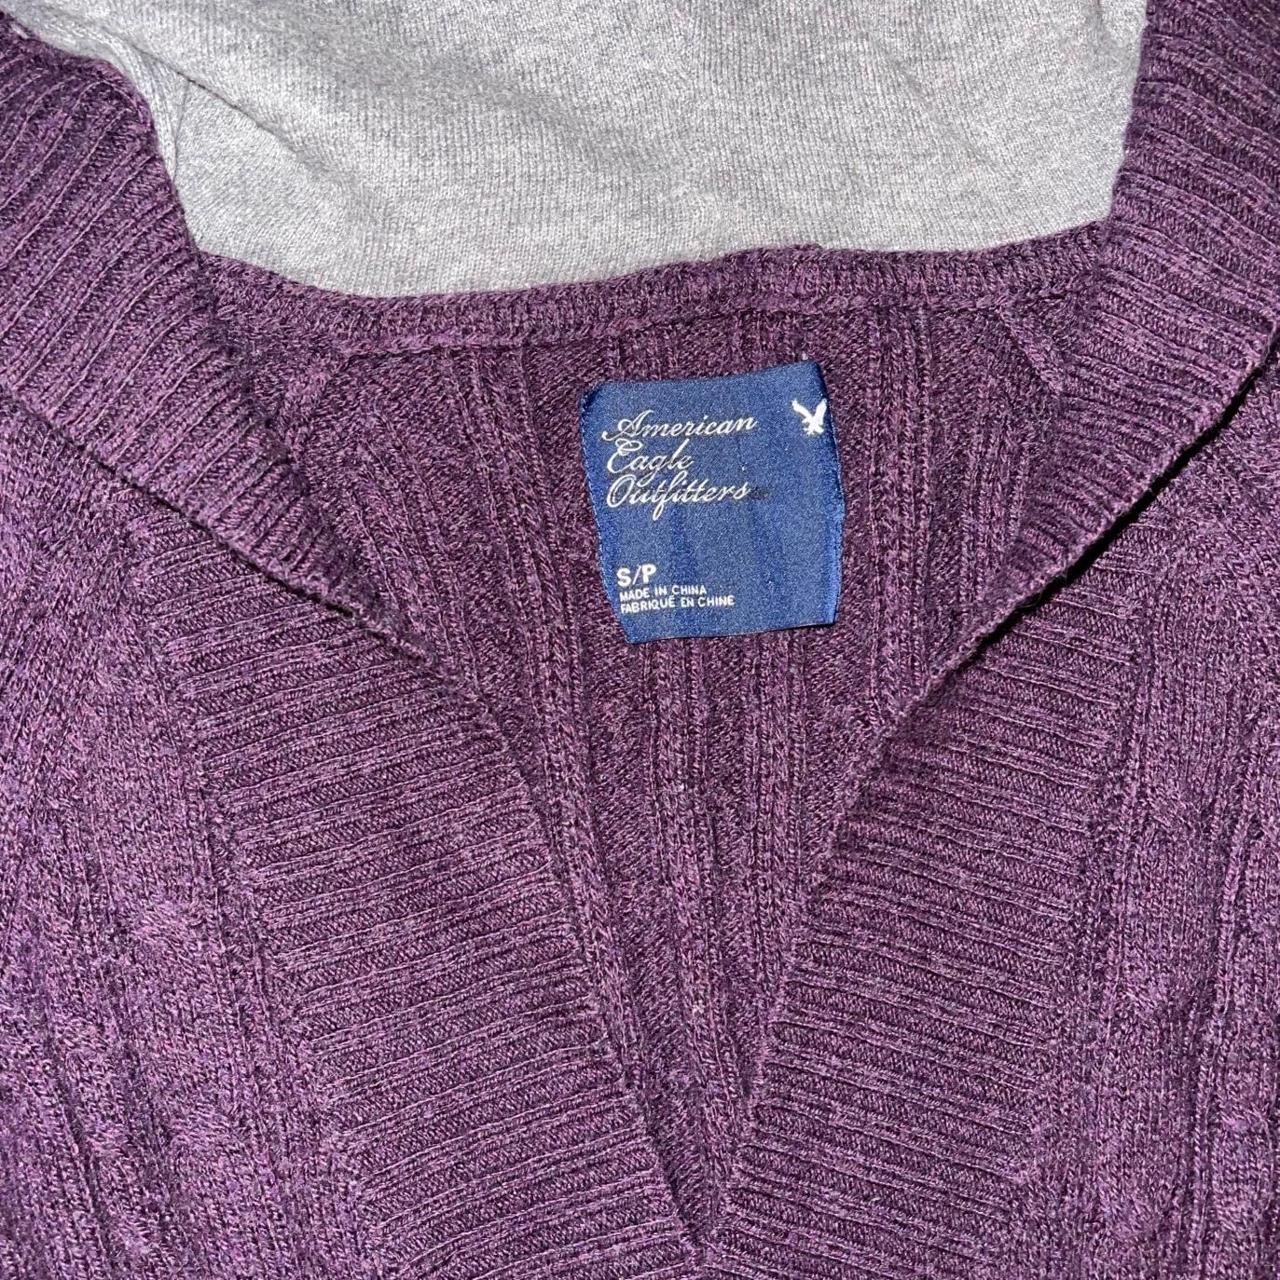 Dark purple y2k American eagle sweater with hood!... - Depop